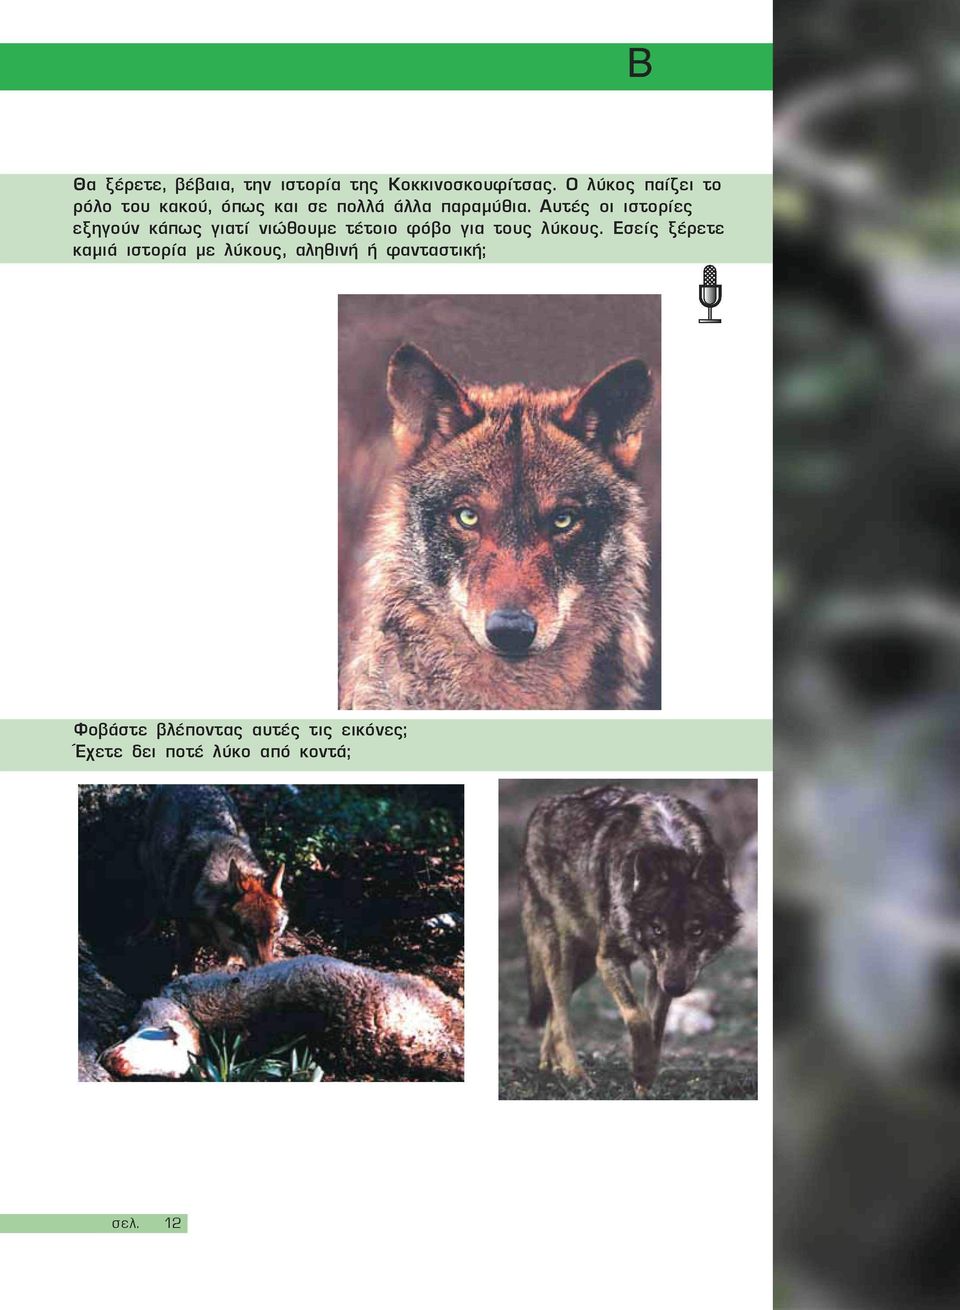 Αυτές οι ιστορίες εξηγούν κάπως γιατί νιώθουμε τέτοιο φόβο για τους λύκους.